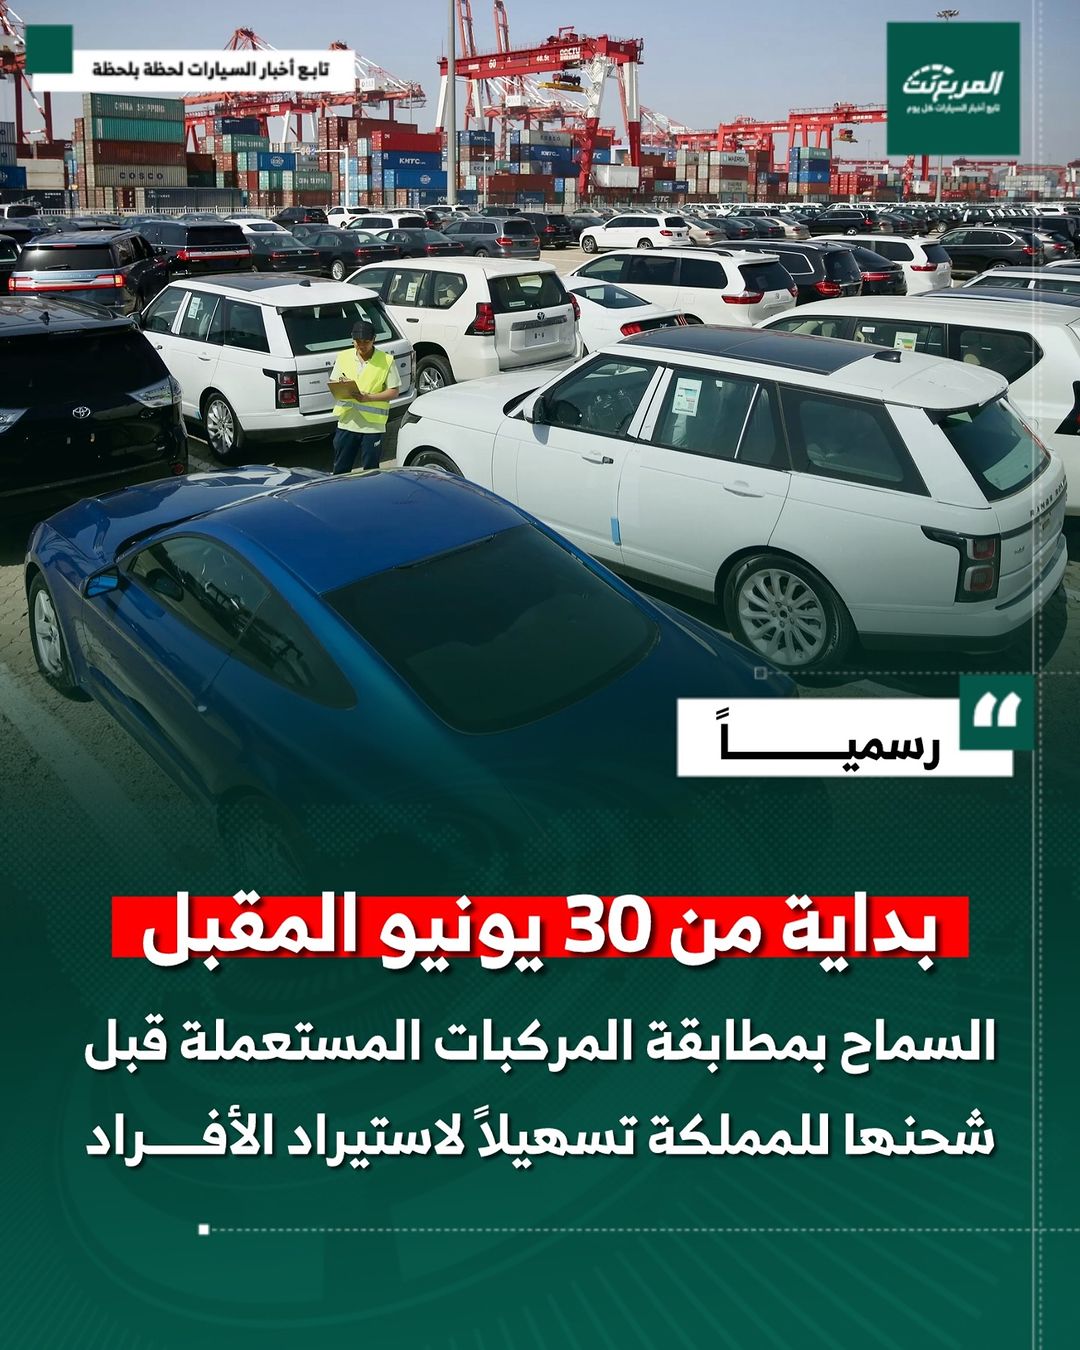 السعودية تسمح بمطابقة المركبات المستعملة قبل شحنها للمملكة لتسهيل إجراءات استيراد المركبات للأفراد 1